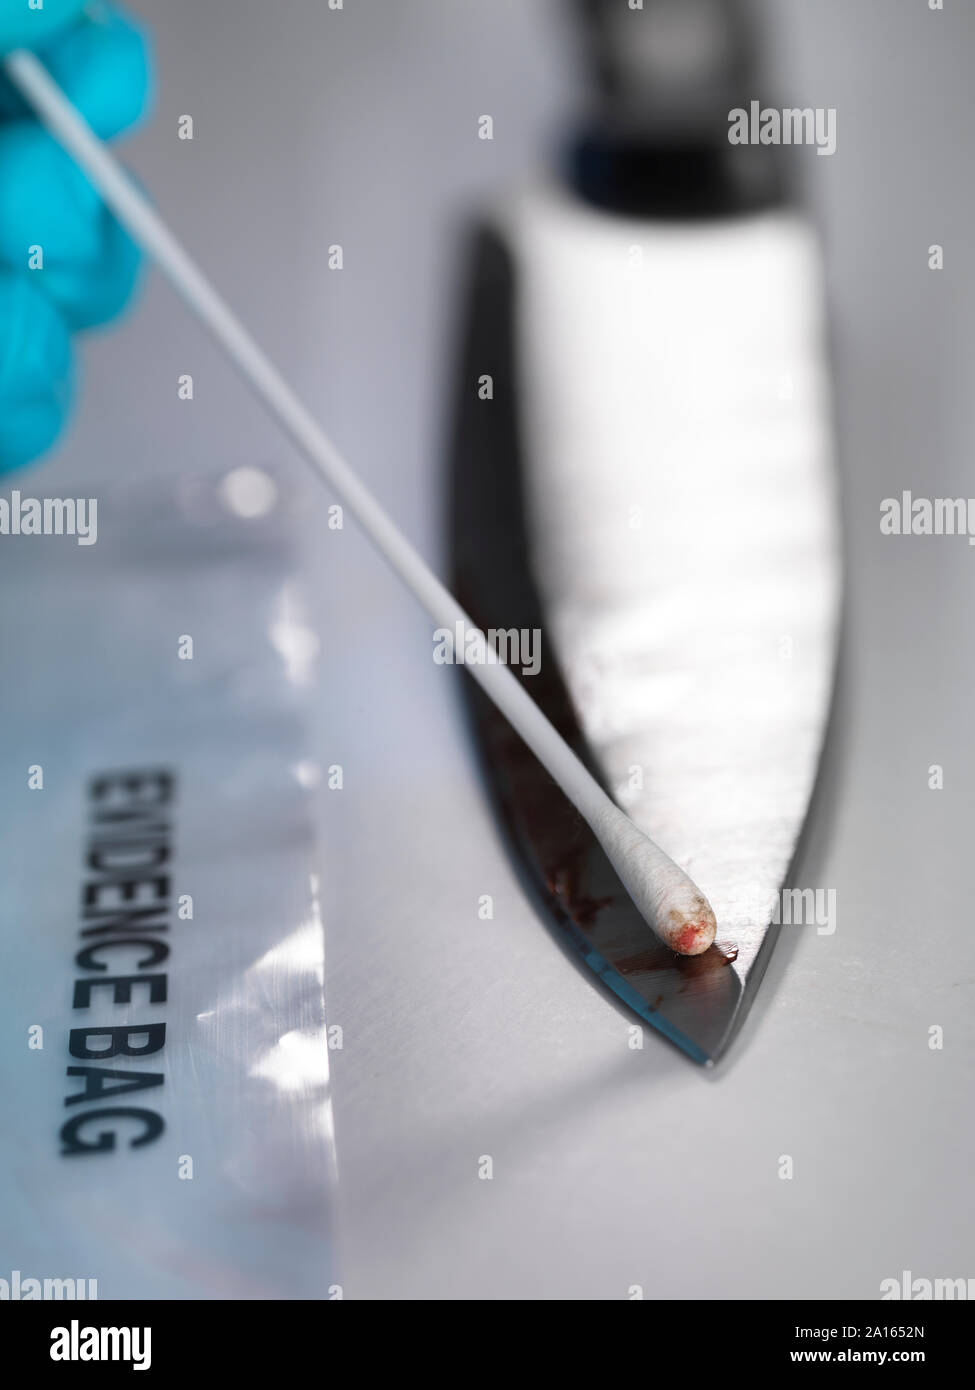 Científico Forense, tomando pruebas de ADN a partir de una navaja manchada de sangre Foto de stock